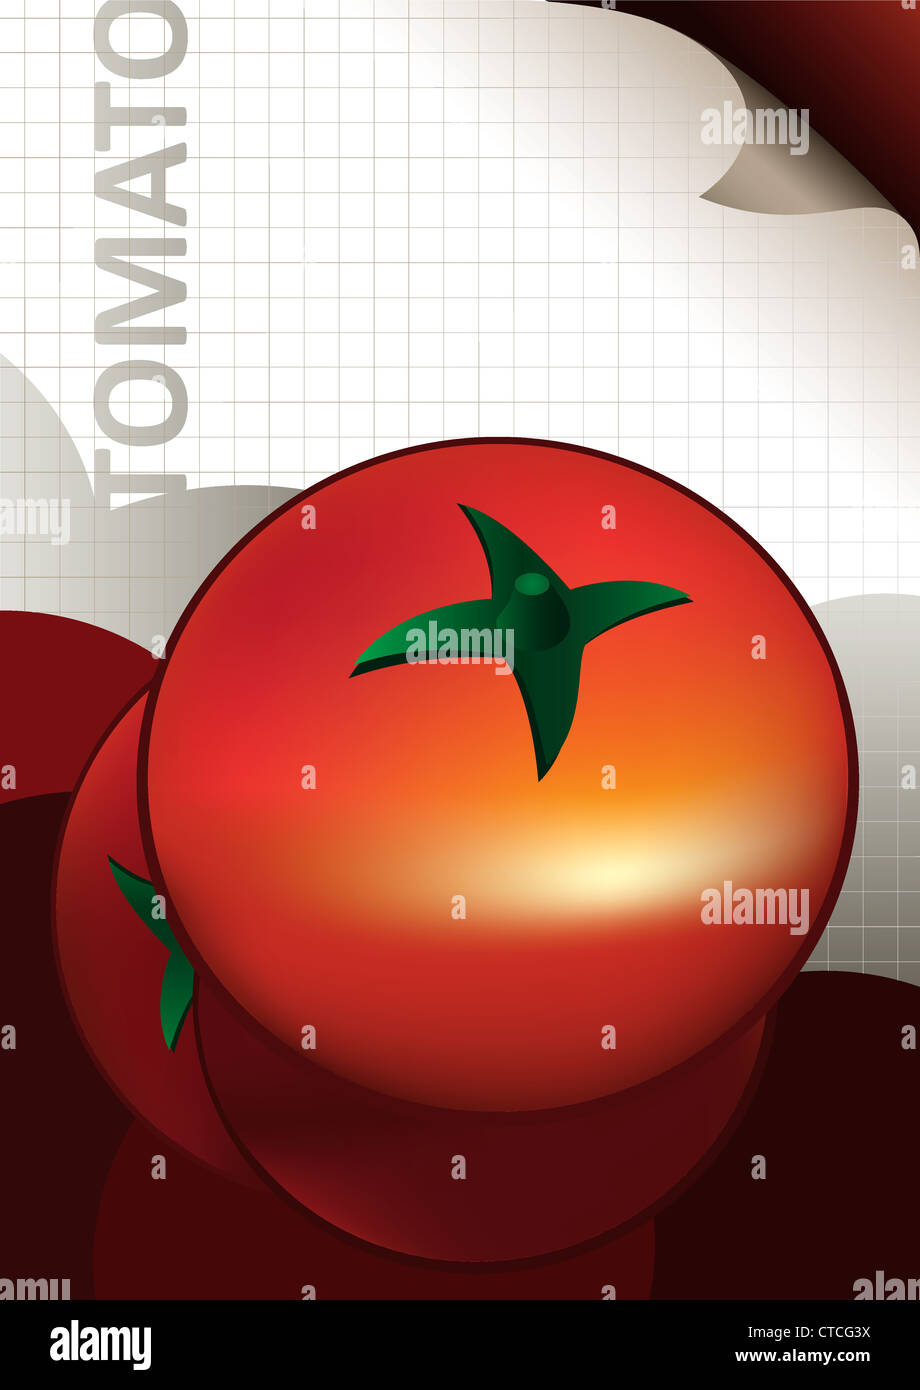 Tomaten-Plakat Stockfoto